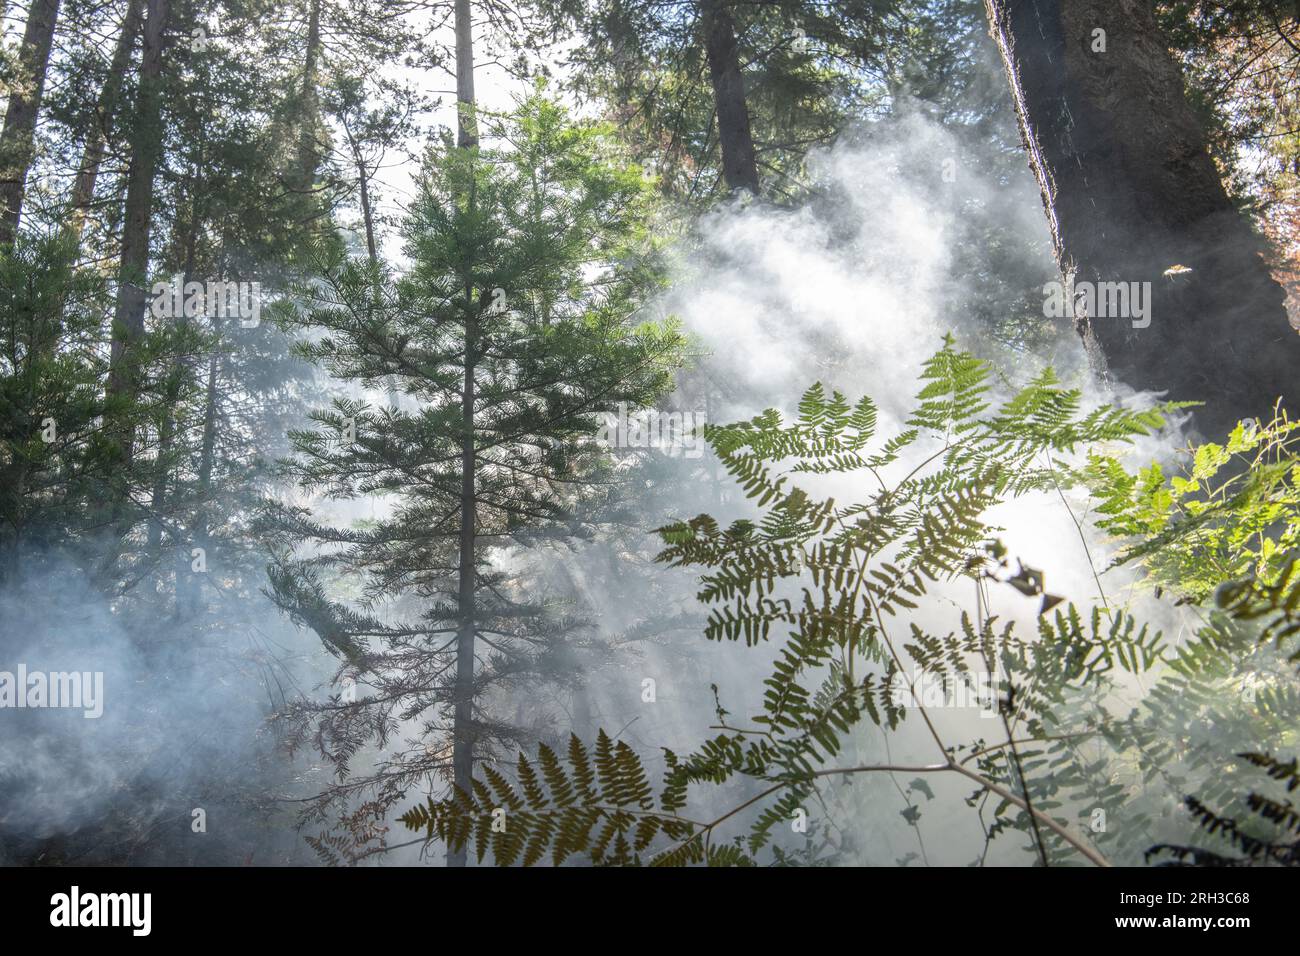 Fumo e foschia riempiono l'aria nella Stanislaus National Forest, nella Sierra Nevada della California, mentre un incendio a bassa intensità brucia attraverso la macchia. Foto Stock